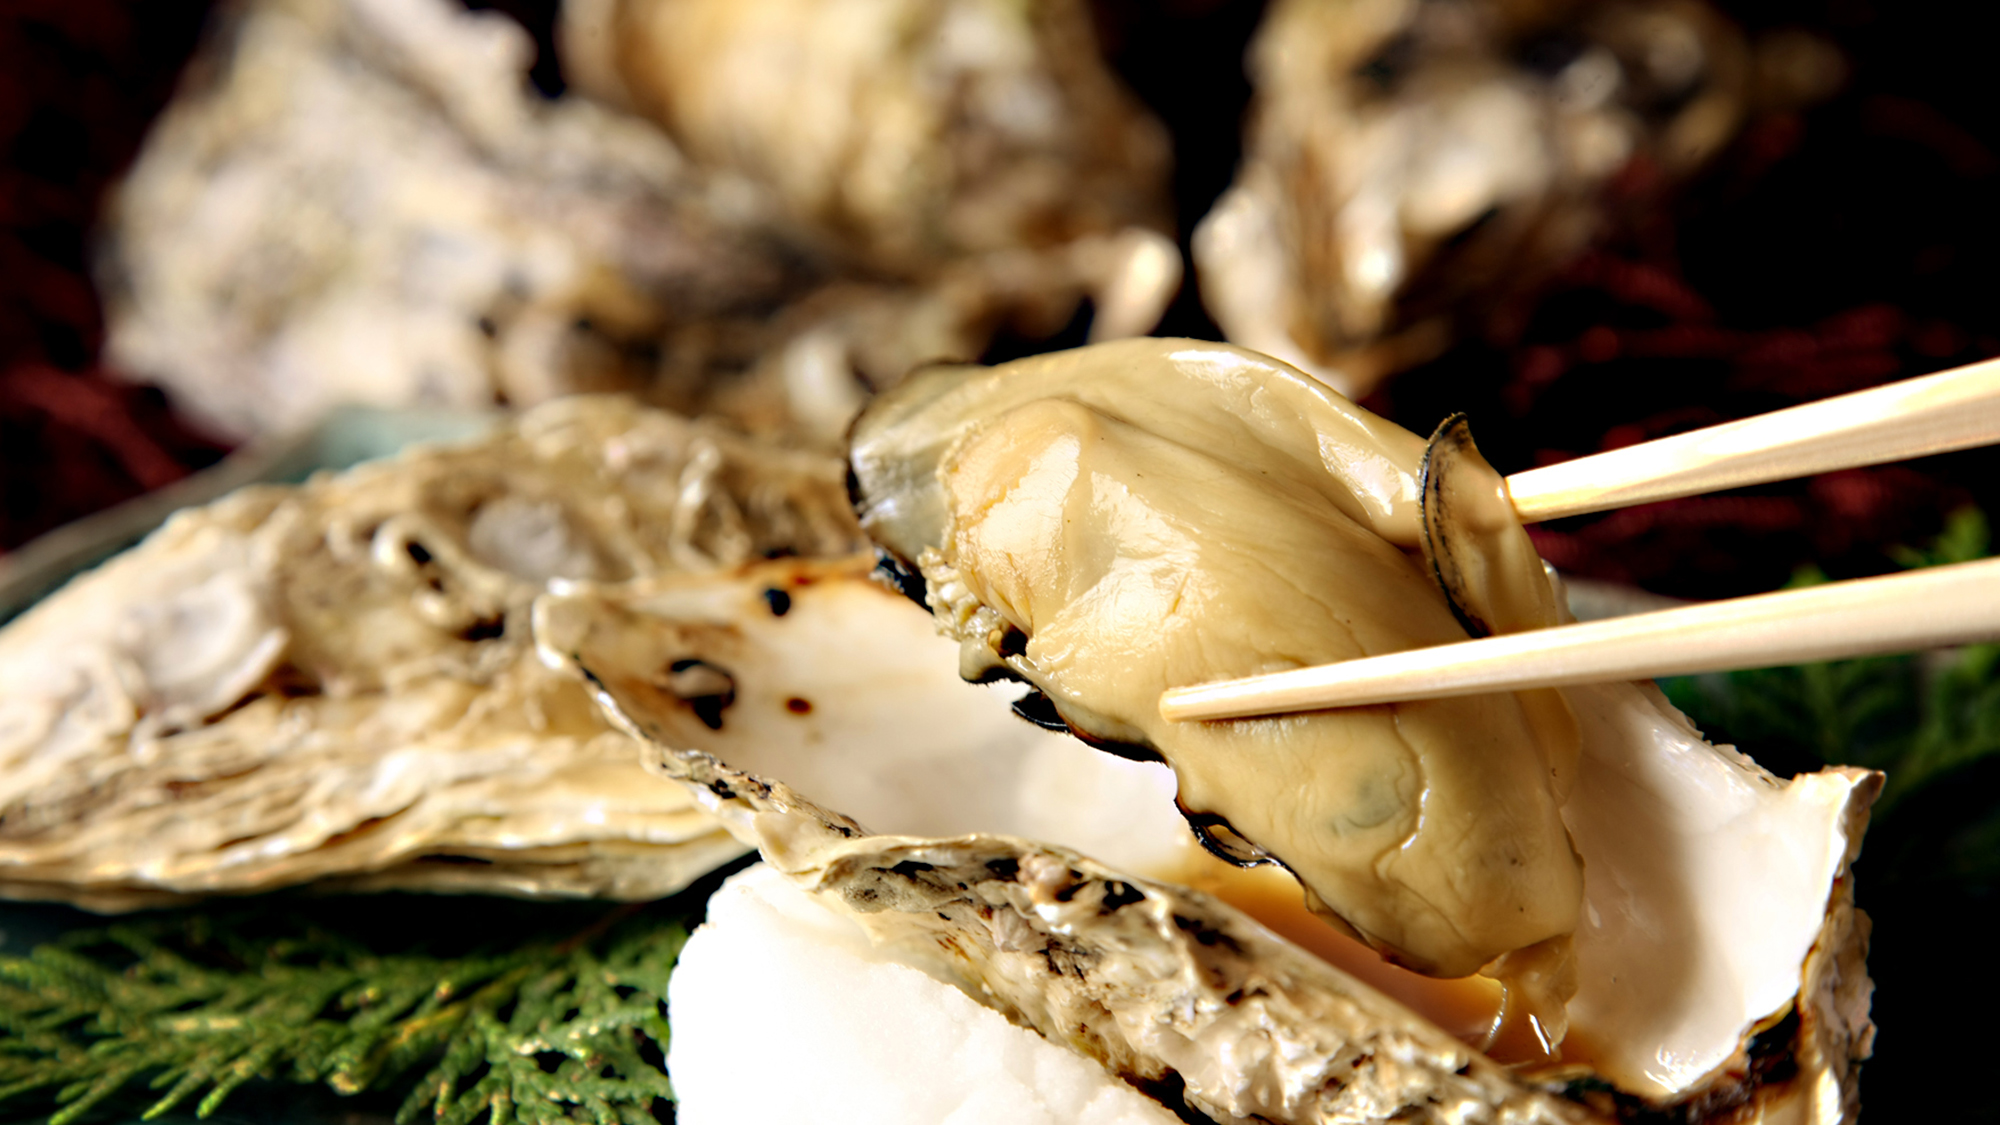 牡蠣は北海道各地で獲れる名物魚介類のひとつ。プリプリの身と旨味を是非ご堪能ください。